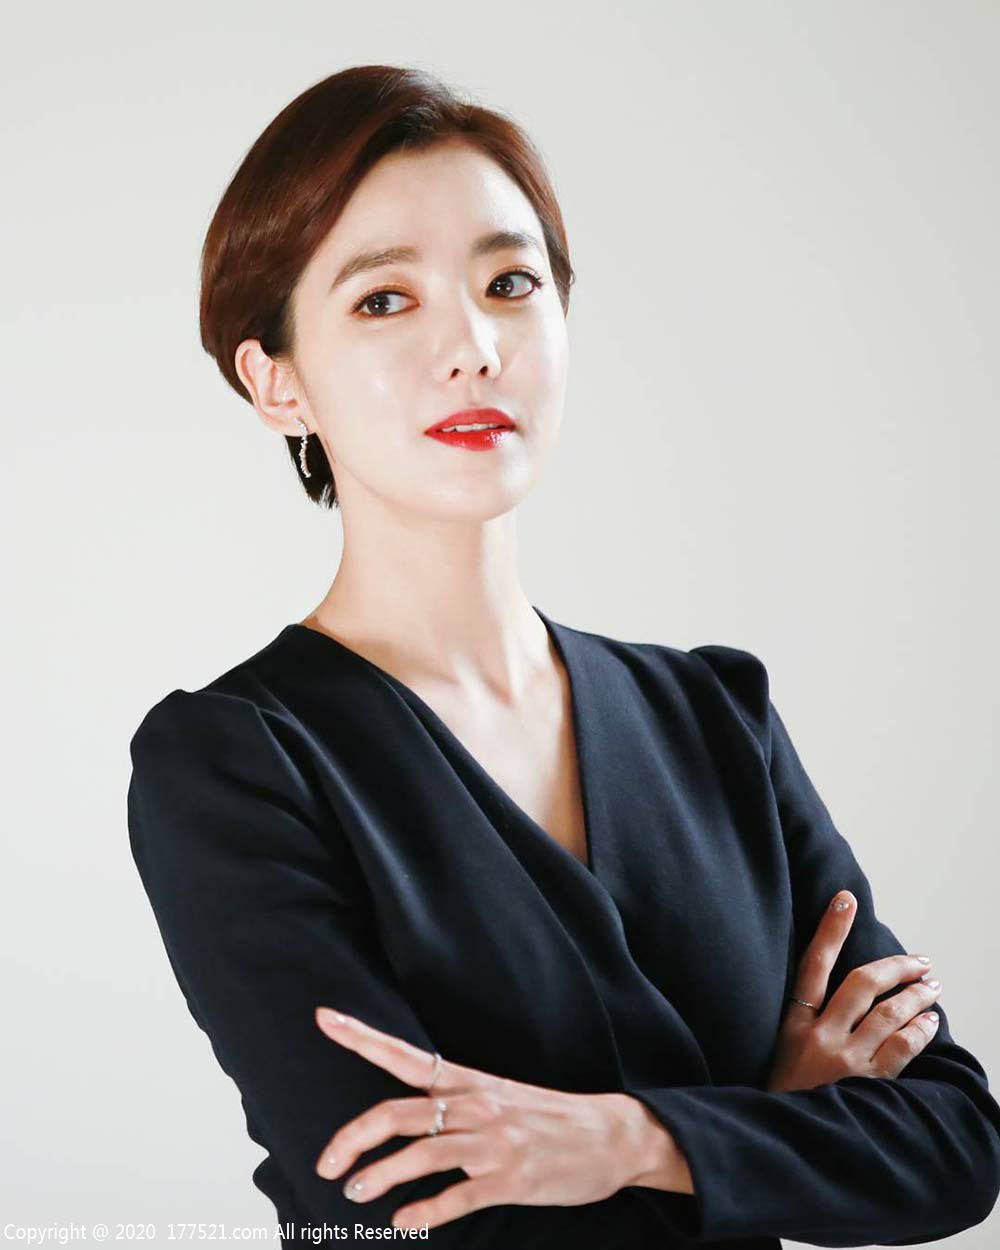 李素妍( 이소연, Lee So Yeon)写真资料职业历程实时更新